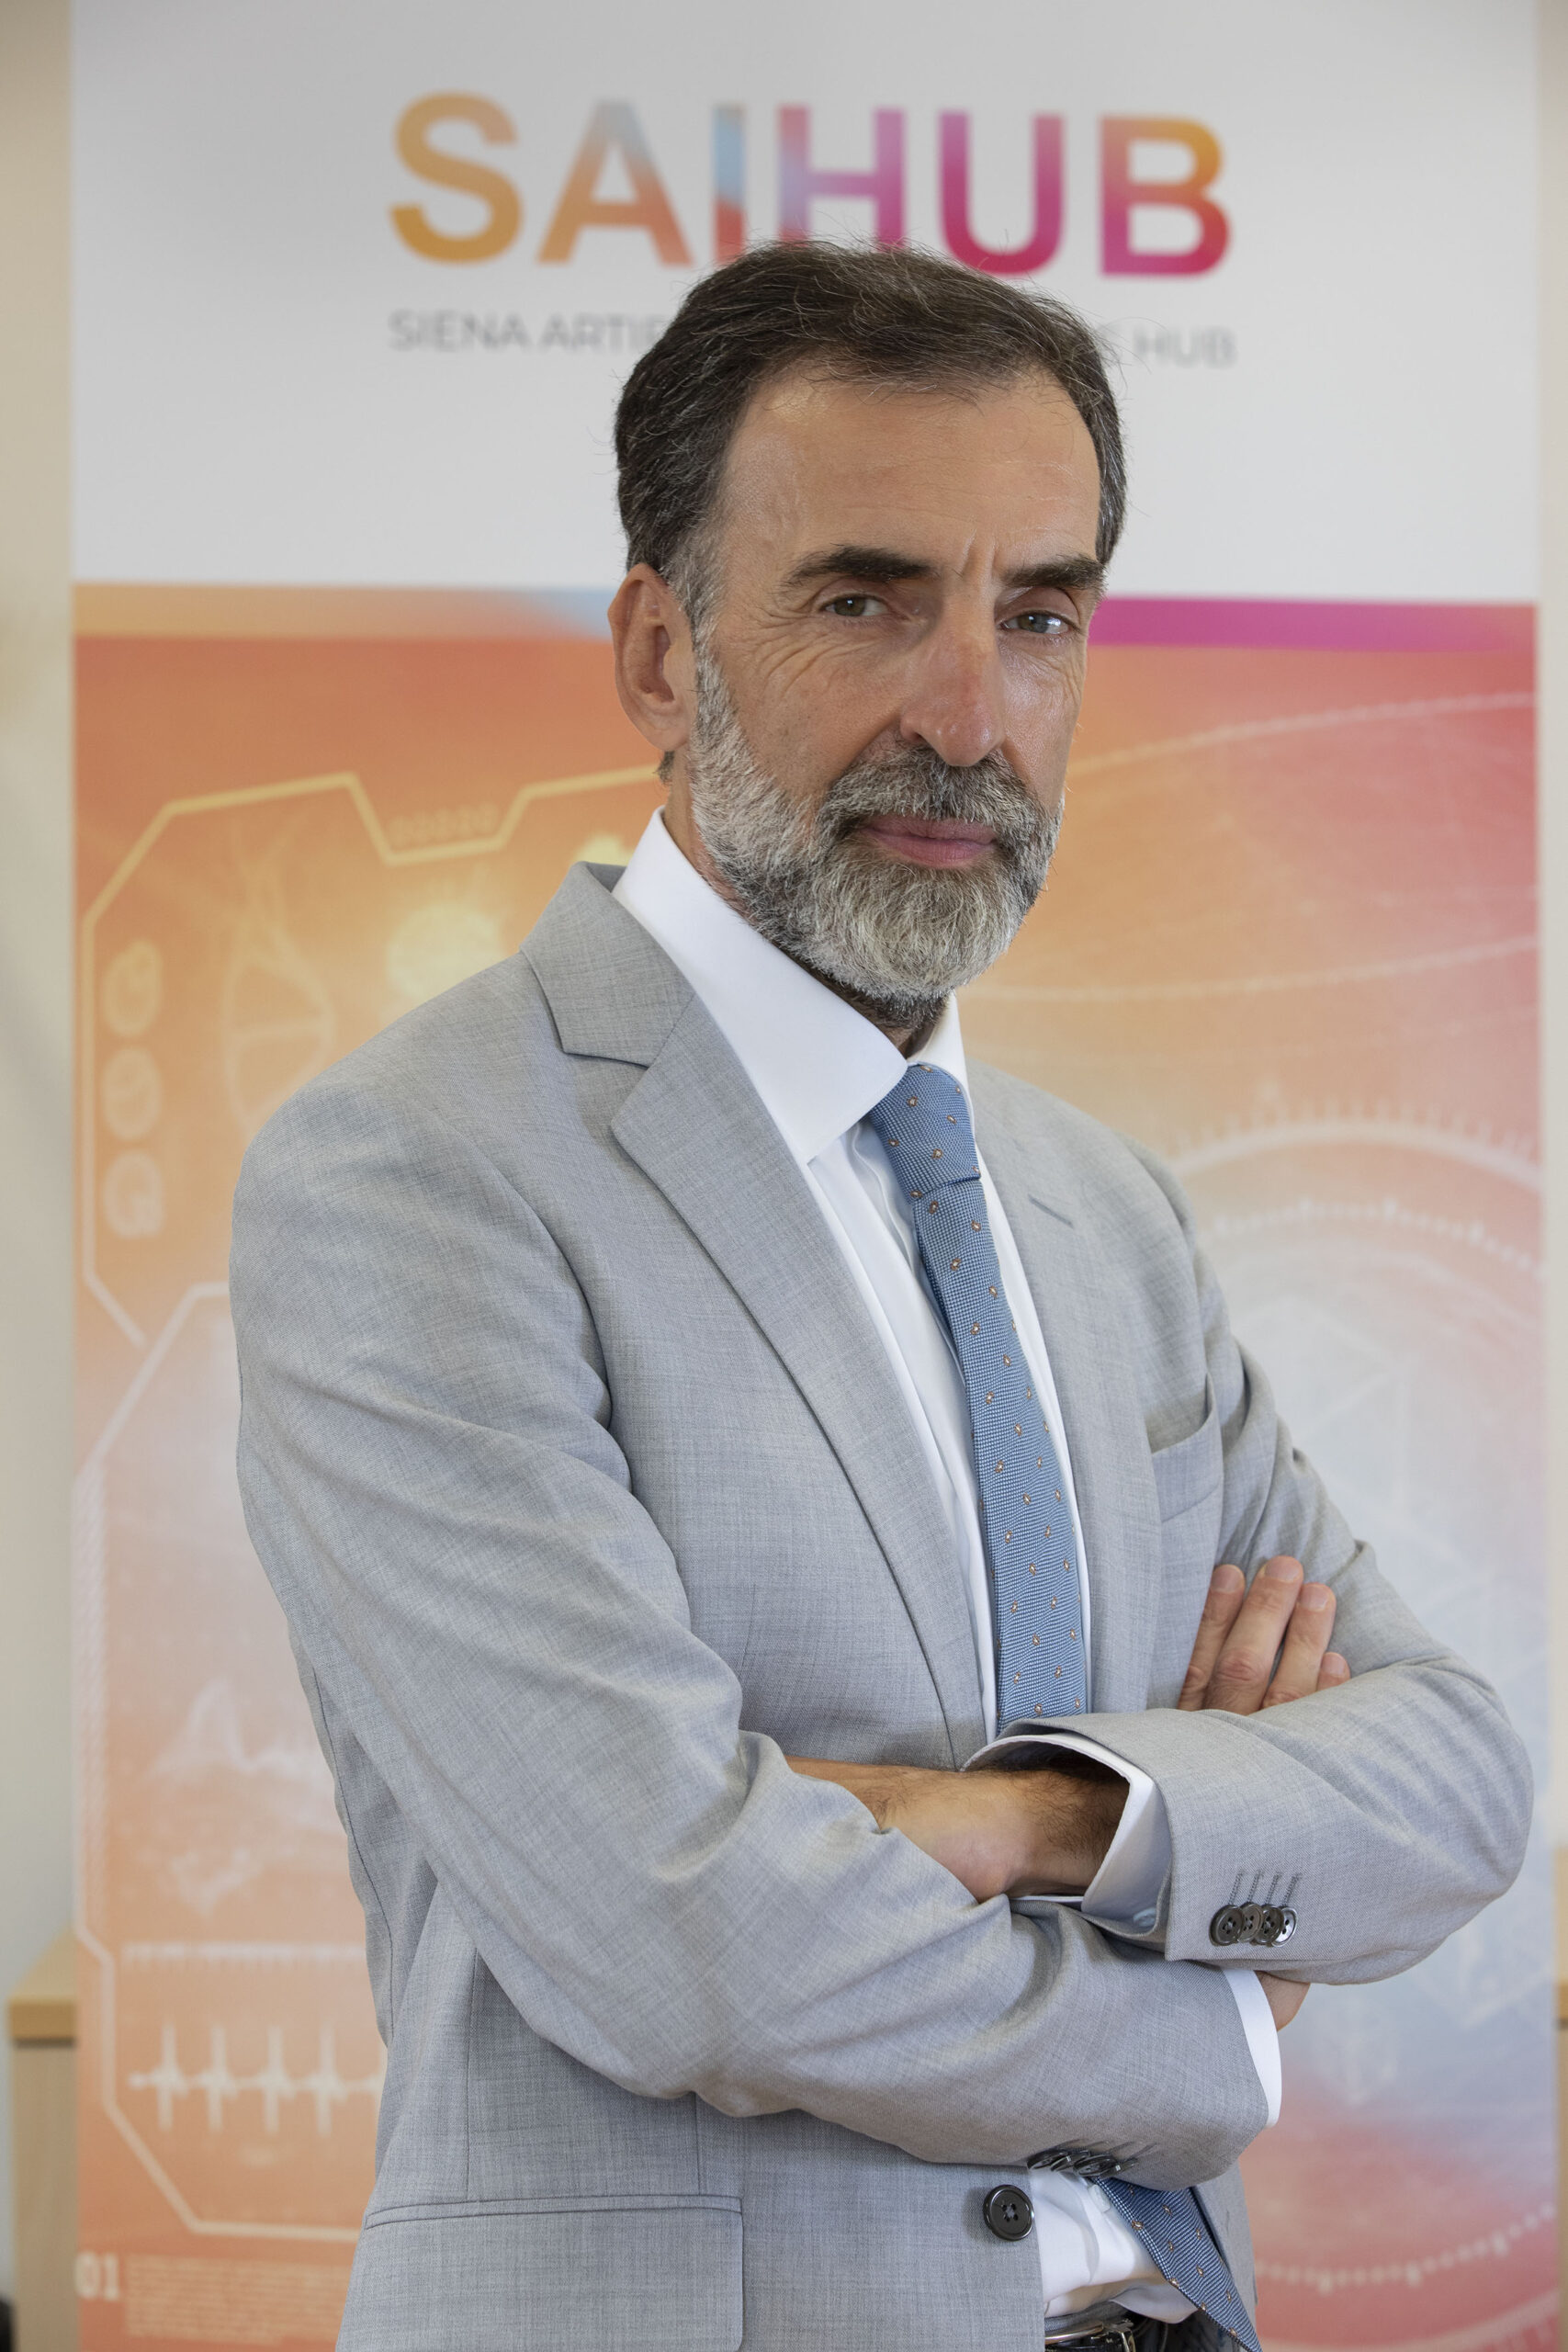 Valter Fraccaro は、生命科学の分野で世界的に重要なハブである Siena Artificial Intelligence Hub の頭字語である SAIHub の社長です。